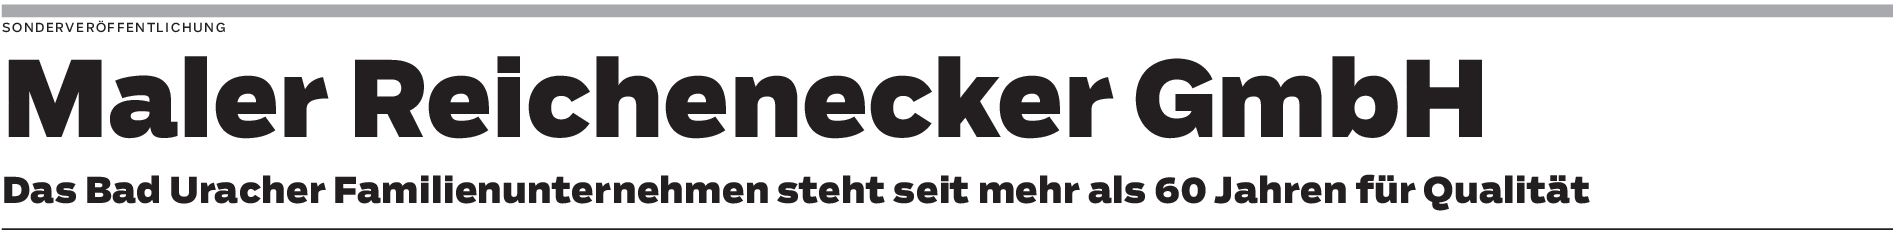 Maler Reichenecker GmbH in Bad Urach: Innovativ und bewährt kundennah